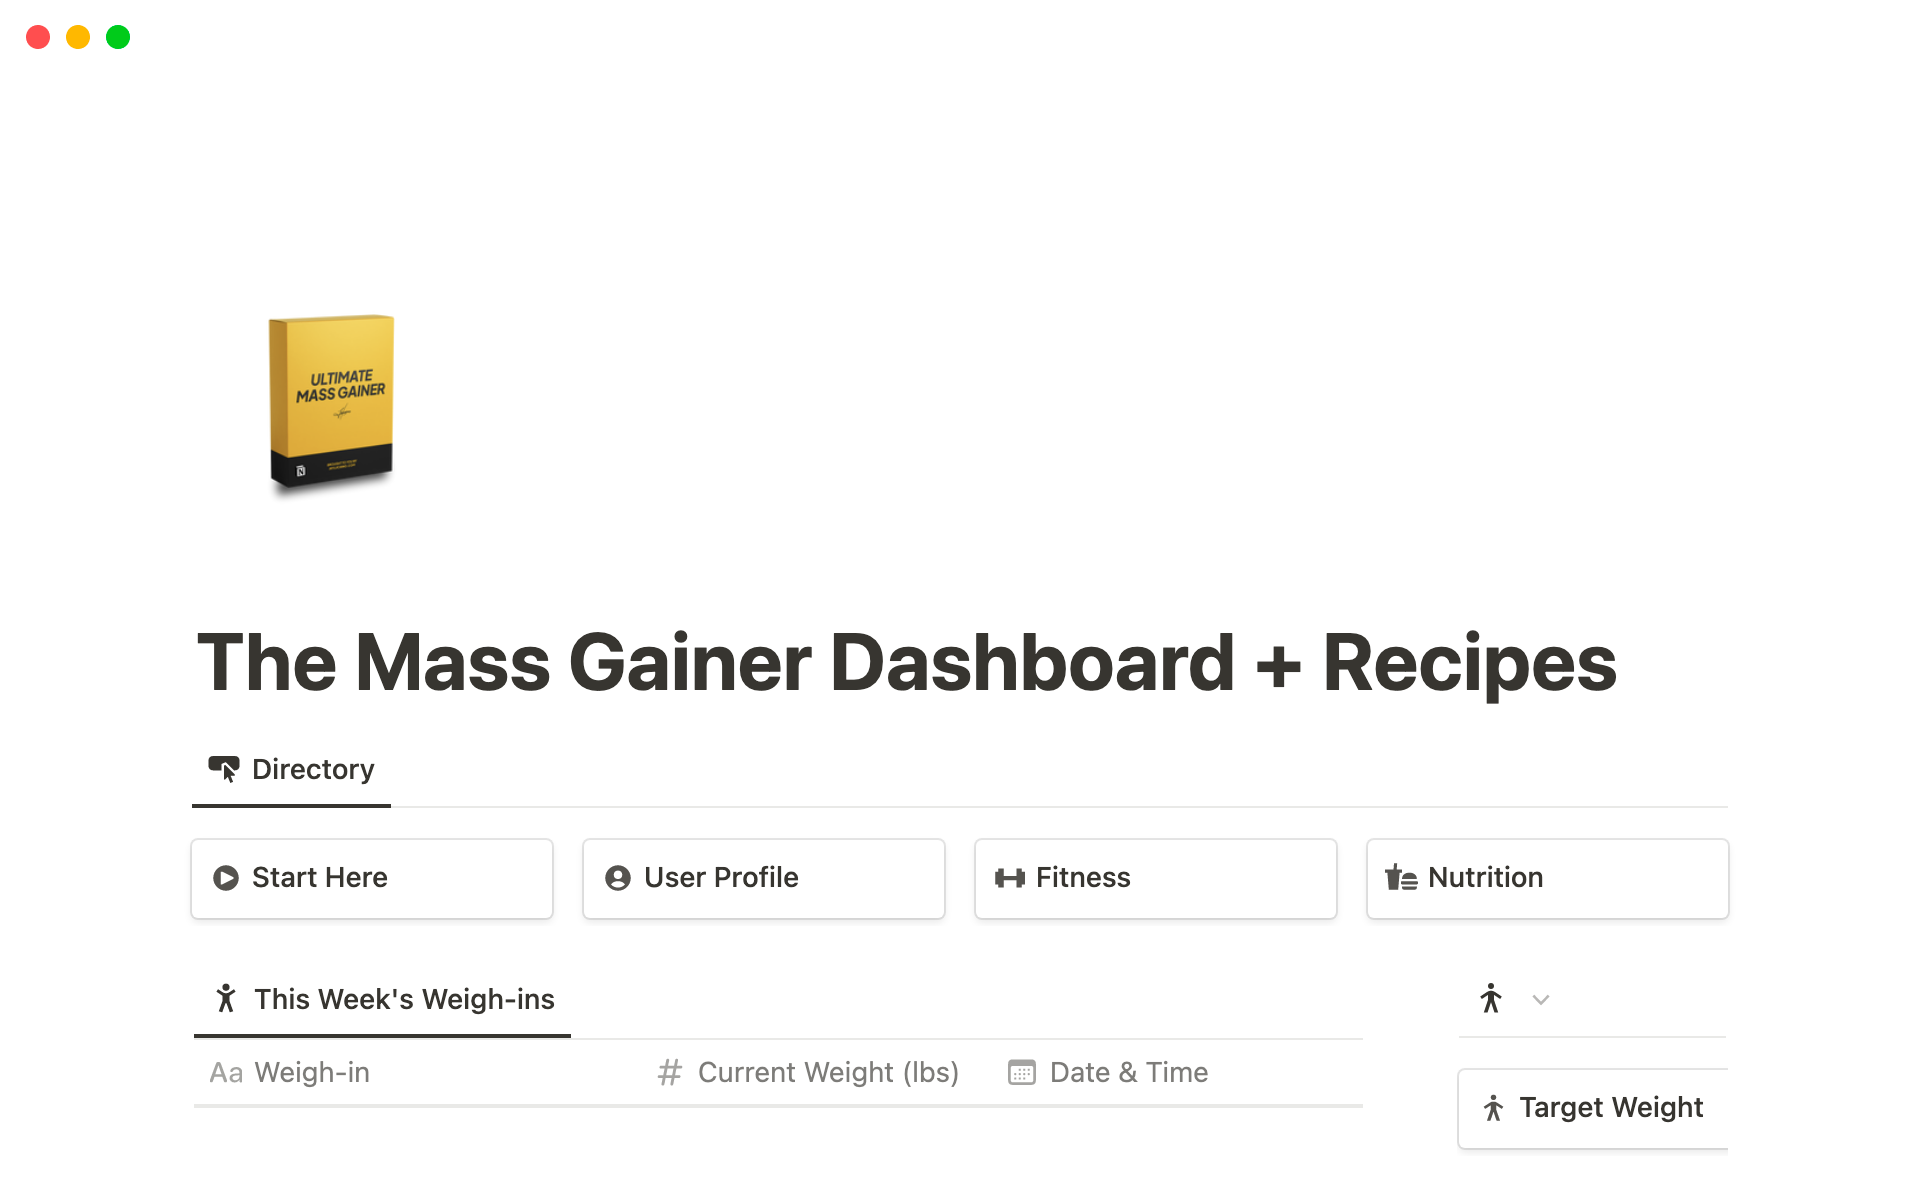 Mass Gainer Dashboardのテンプレートのプレビュー